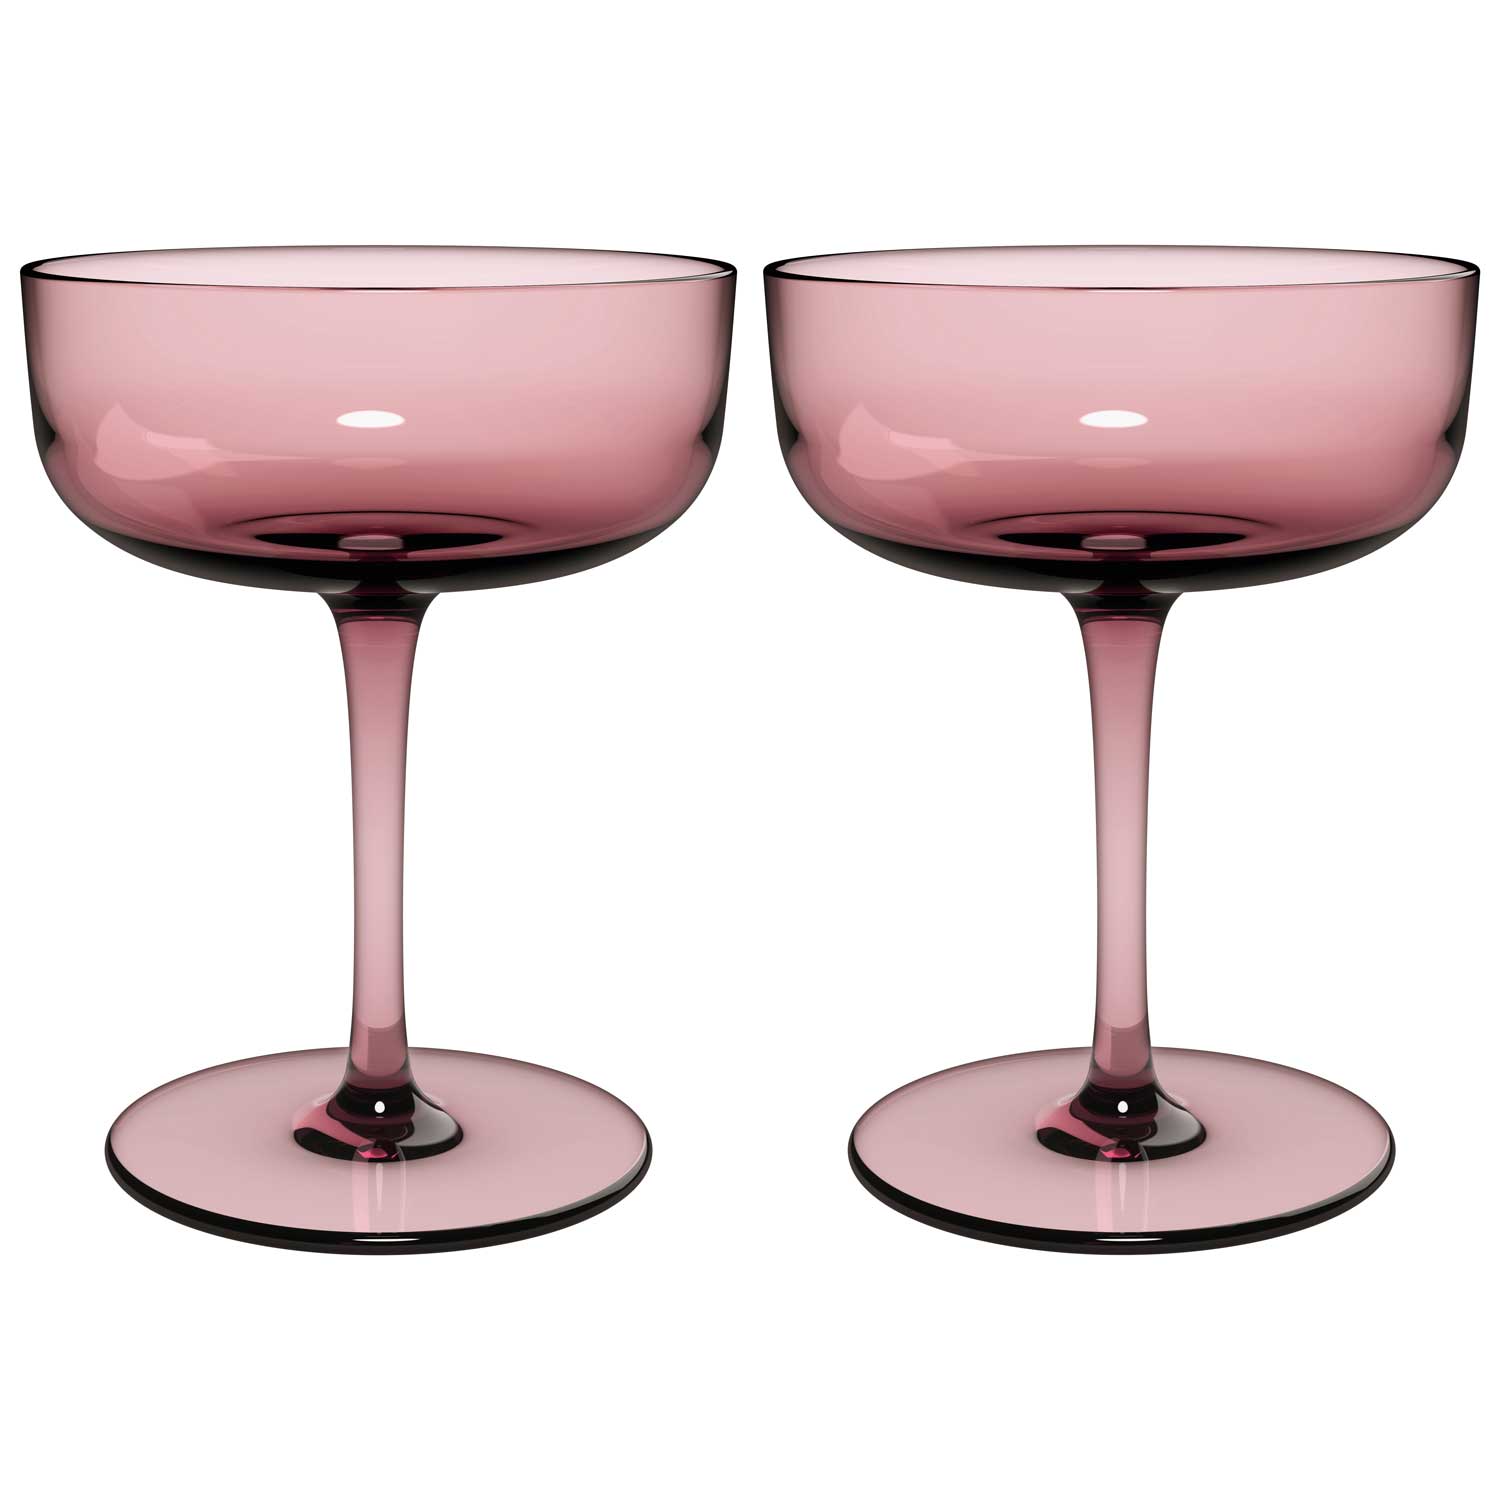 Villeroy & Boch, Like Champagne Glass, Set of 2 - Zola